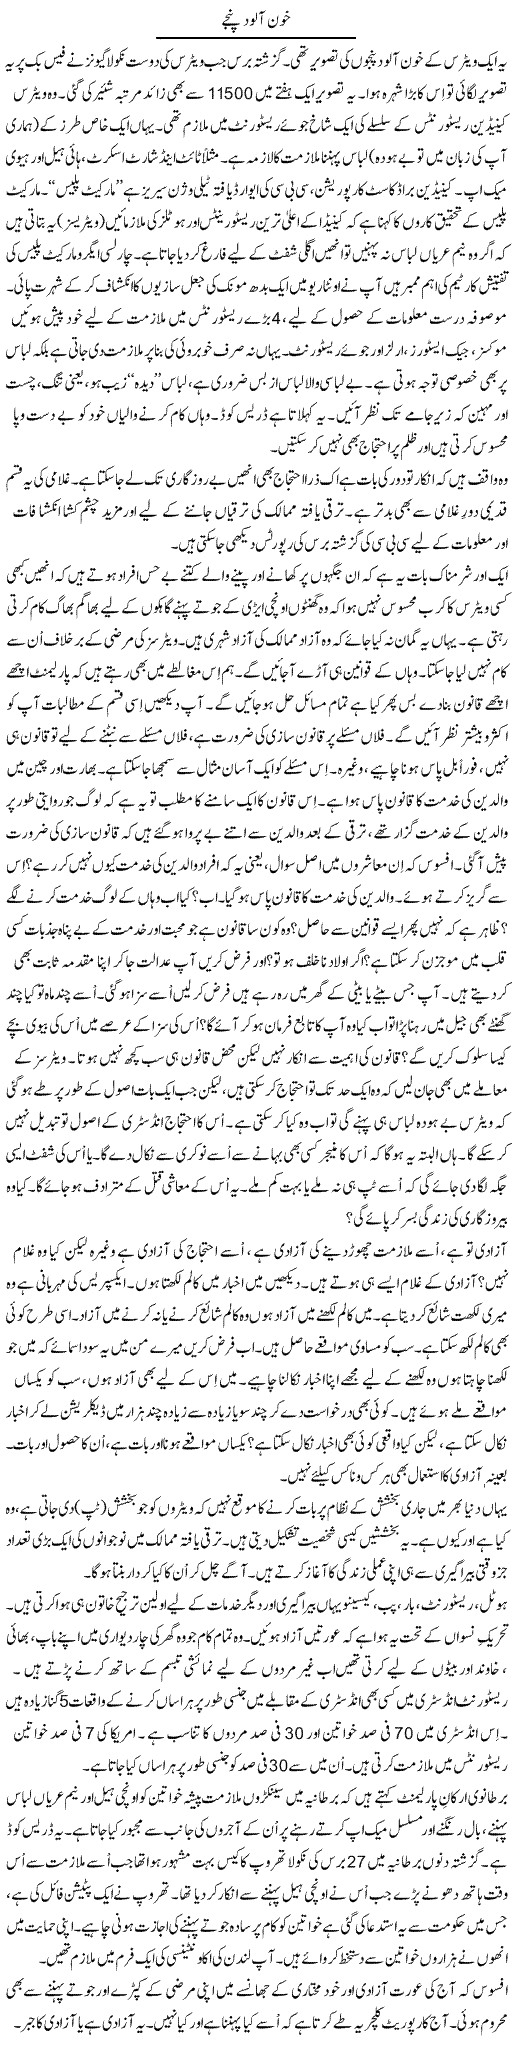 Khoon Alood Panje | Shaikh Jaber | Daily Urdu Columns